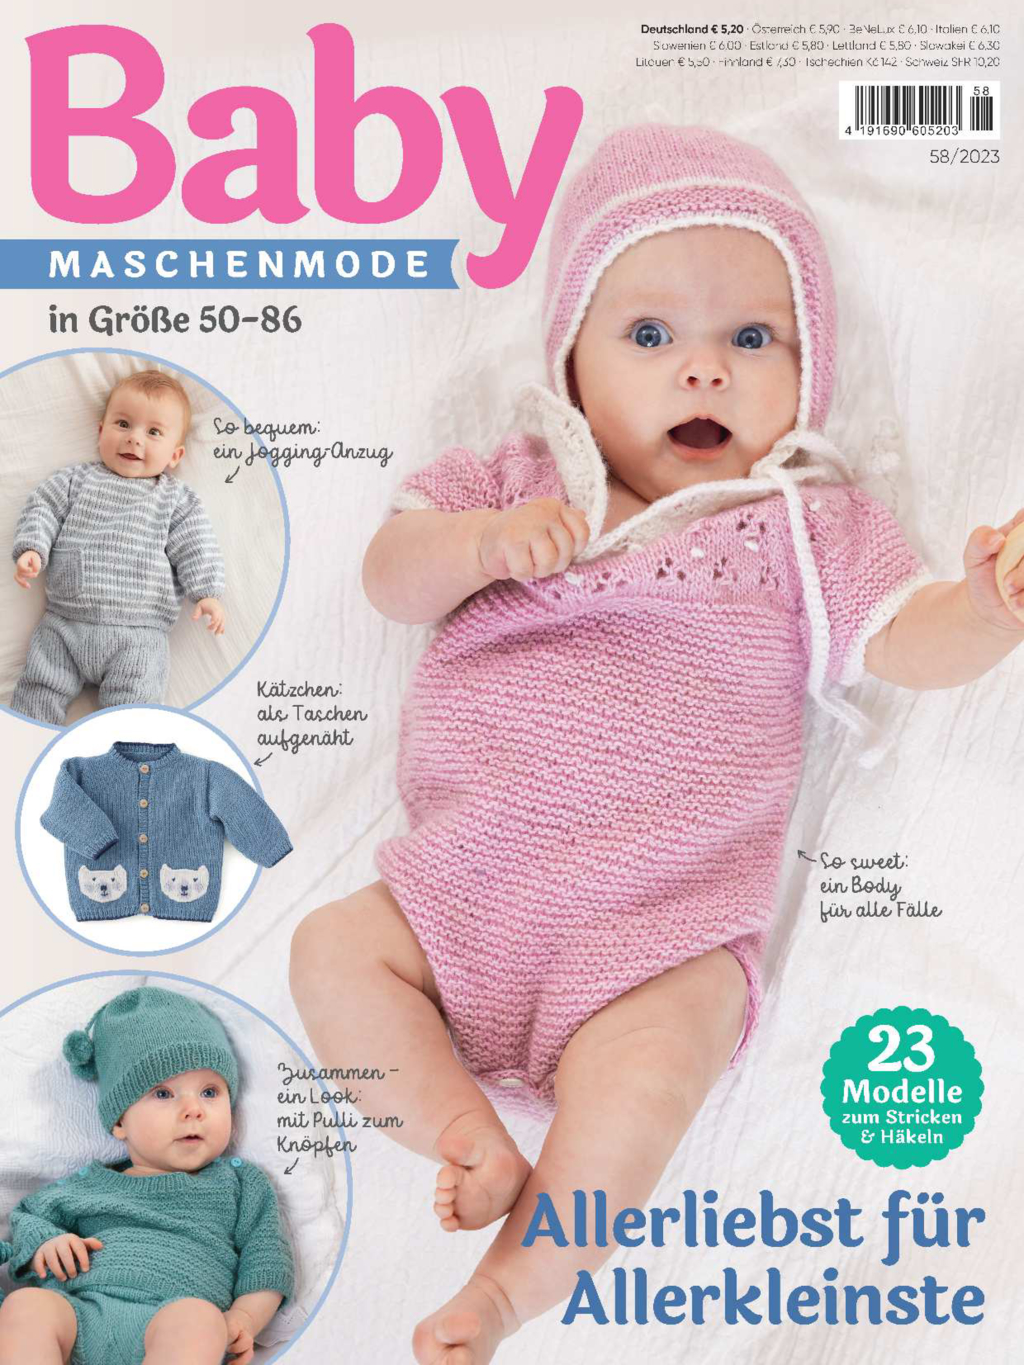 Baby maschenmode 58/2023 - Allerliebst für Allerkleinste